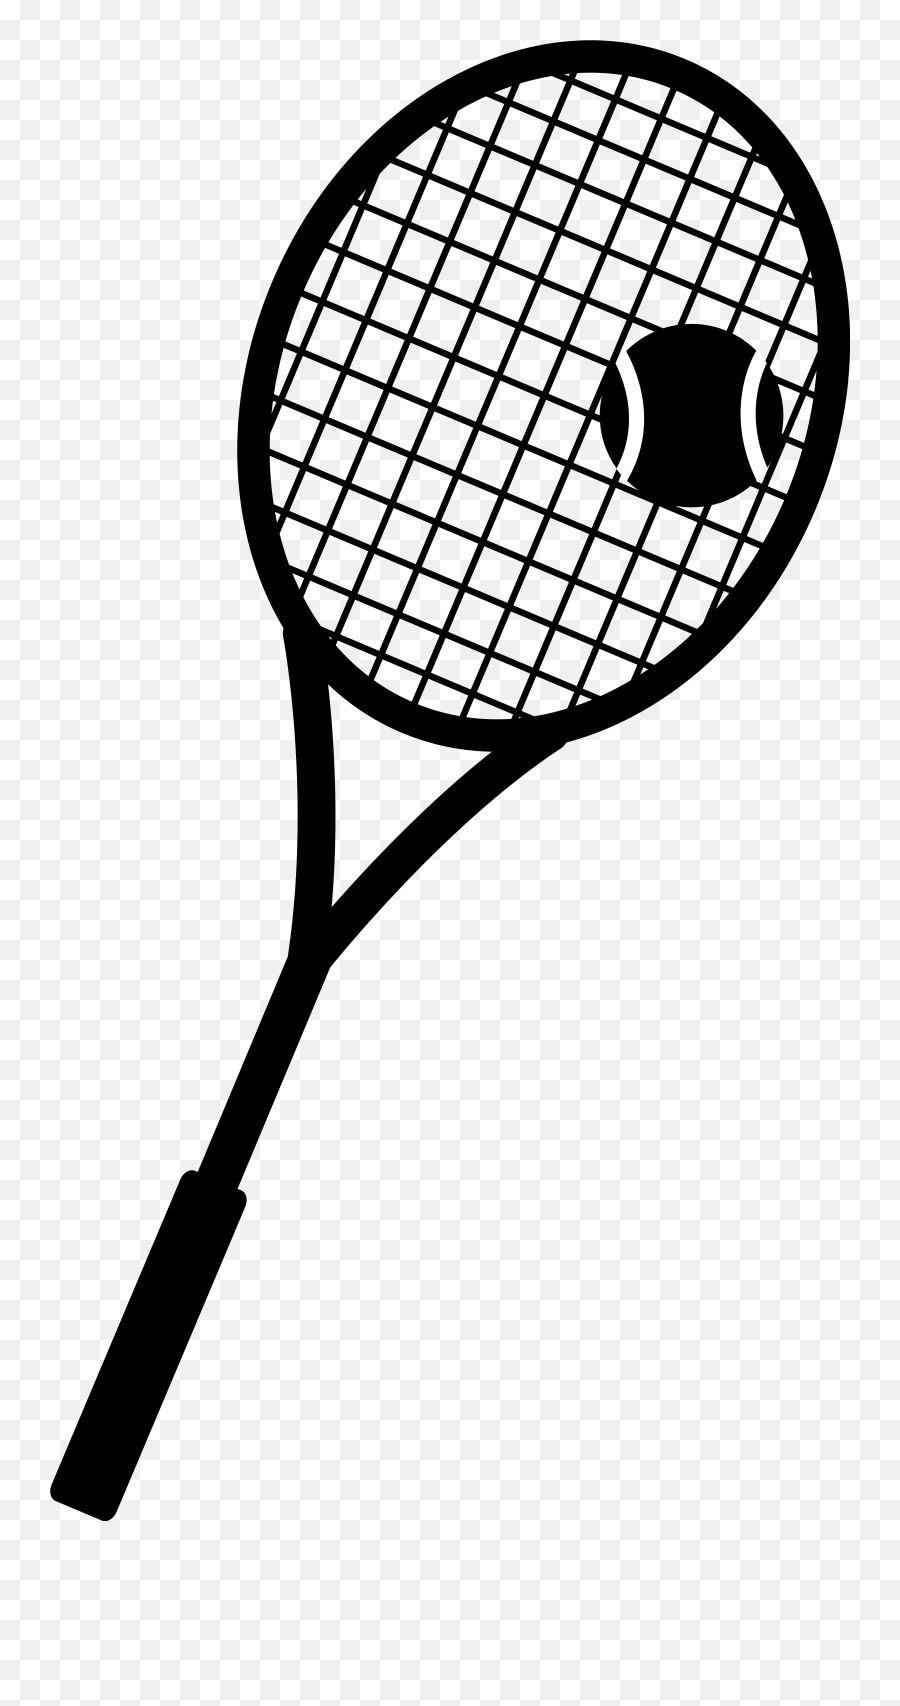 Crossed Tennis Racket Clipart Free - Tennis Racket Clipart Black And White Emoji,Tennis Racket Emoji